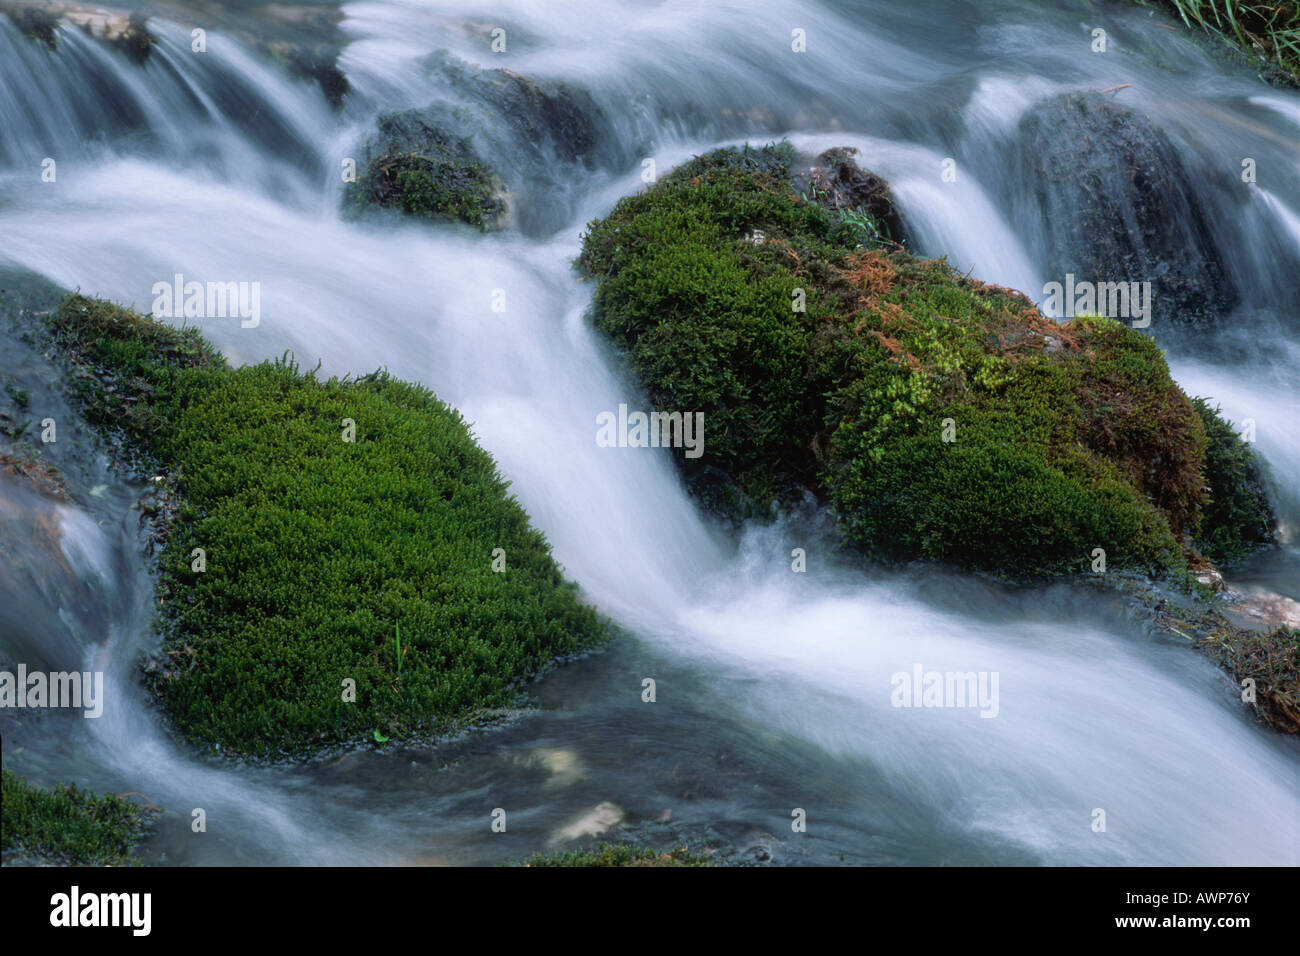 Moosbewachsenen Steinen in Johannesbach Stream, Nord-Tirol, Österreich, Europa Stockfoto